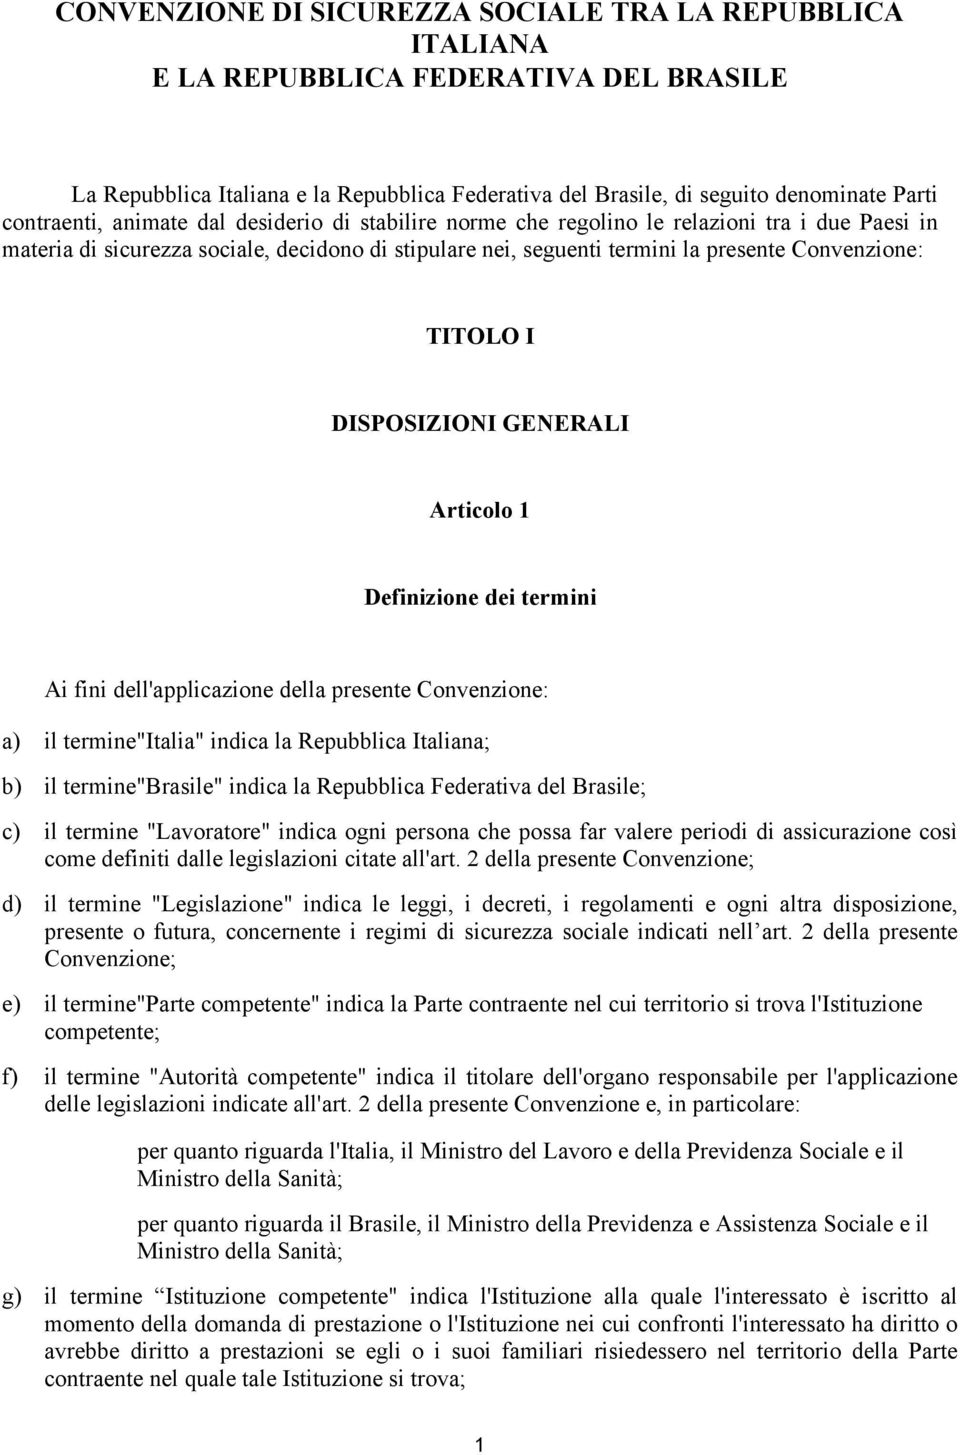 TITOLO I DISPOSIZIONI GENERALI Articolo 1 Definizione dei termini Ai fini dell'applicazione della presente Convenzione: a) il termine"italia" indica la Repubblica Italiana; b) il termine"brasile"